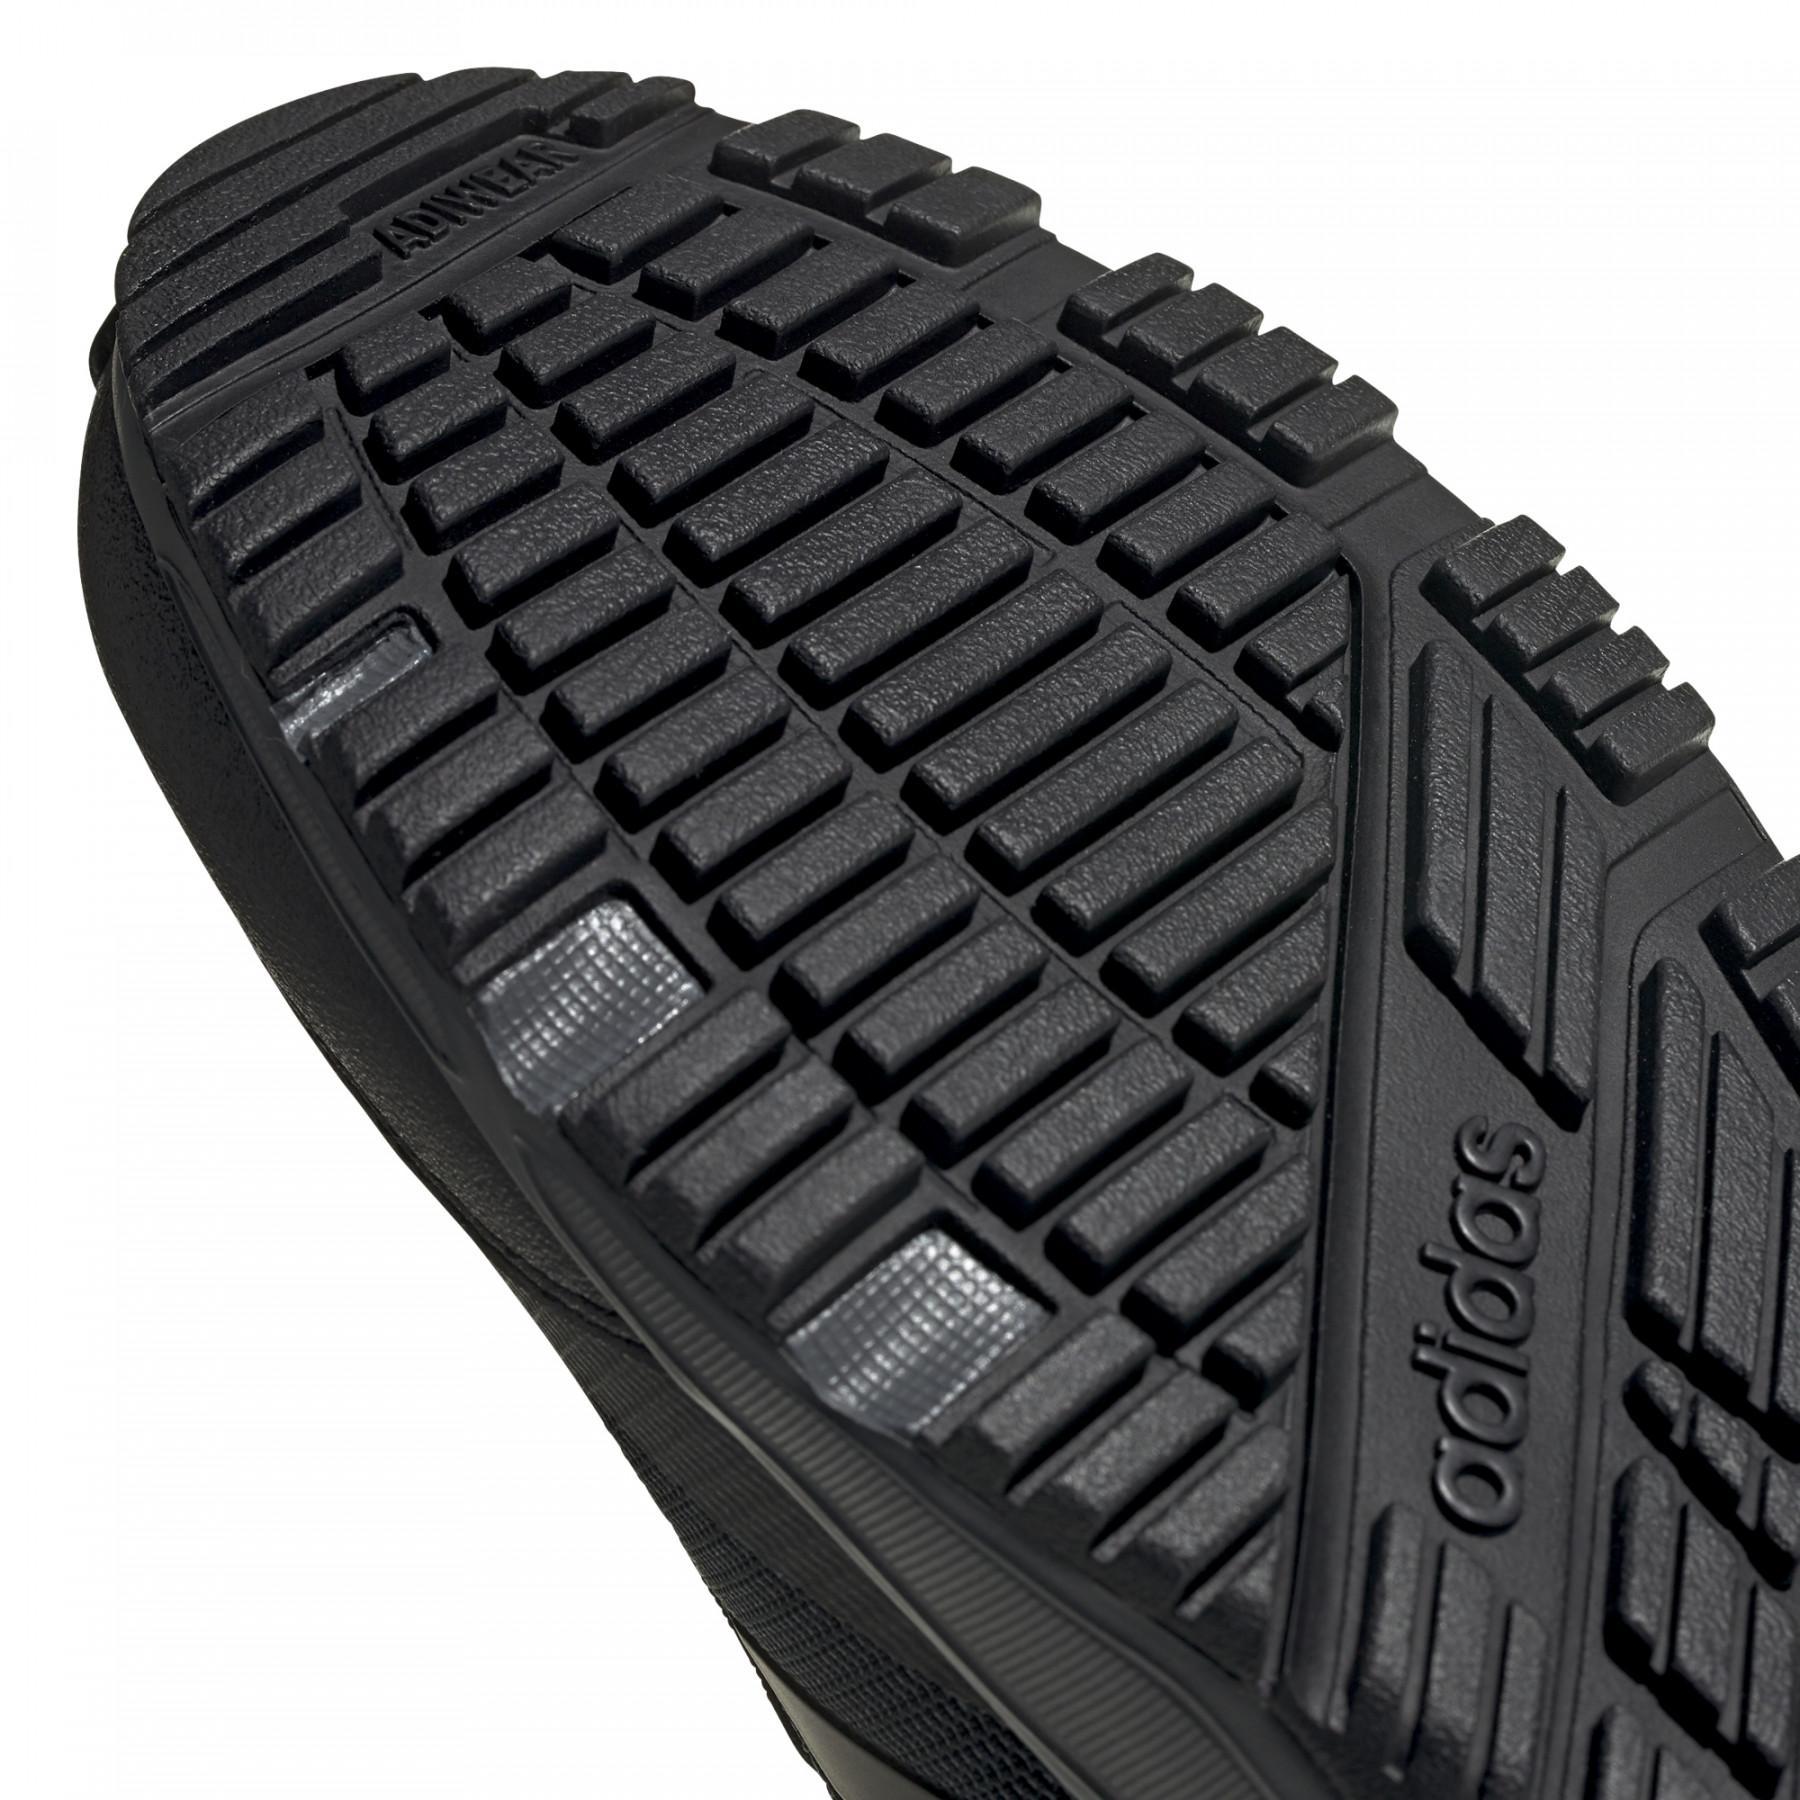 Shoes adidas Rockadia Trail 3.0